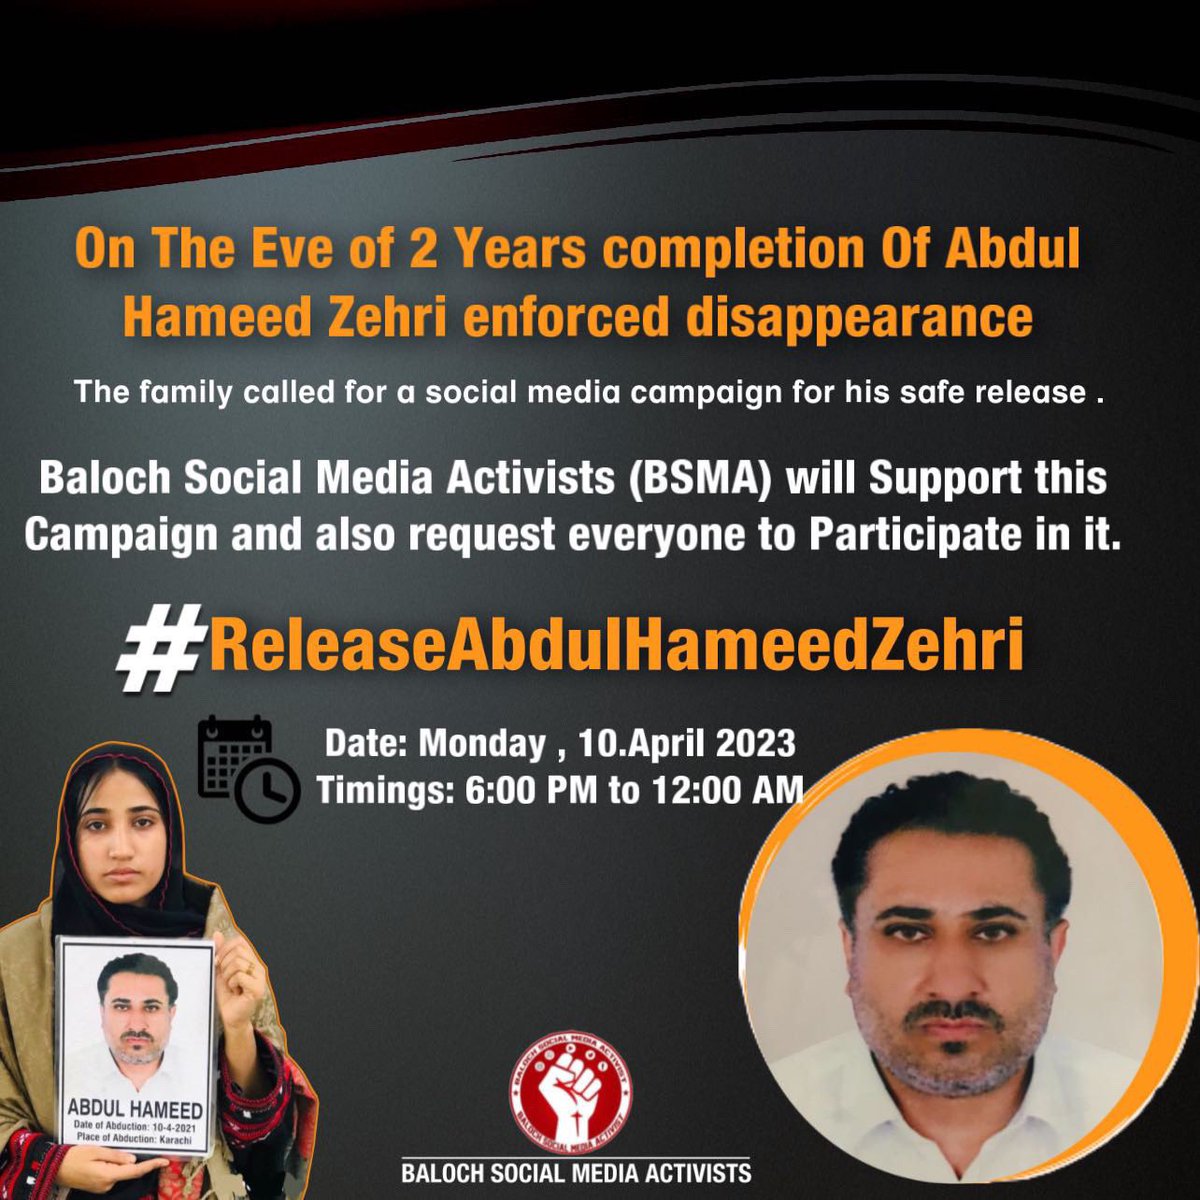 Release Abdul Hameed zehri ✌️